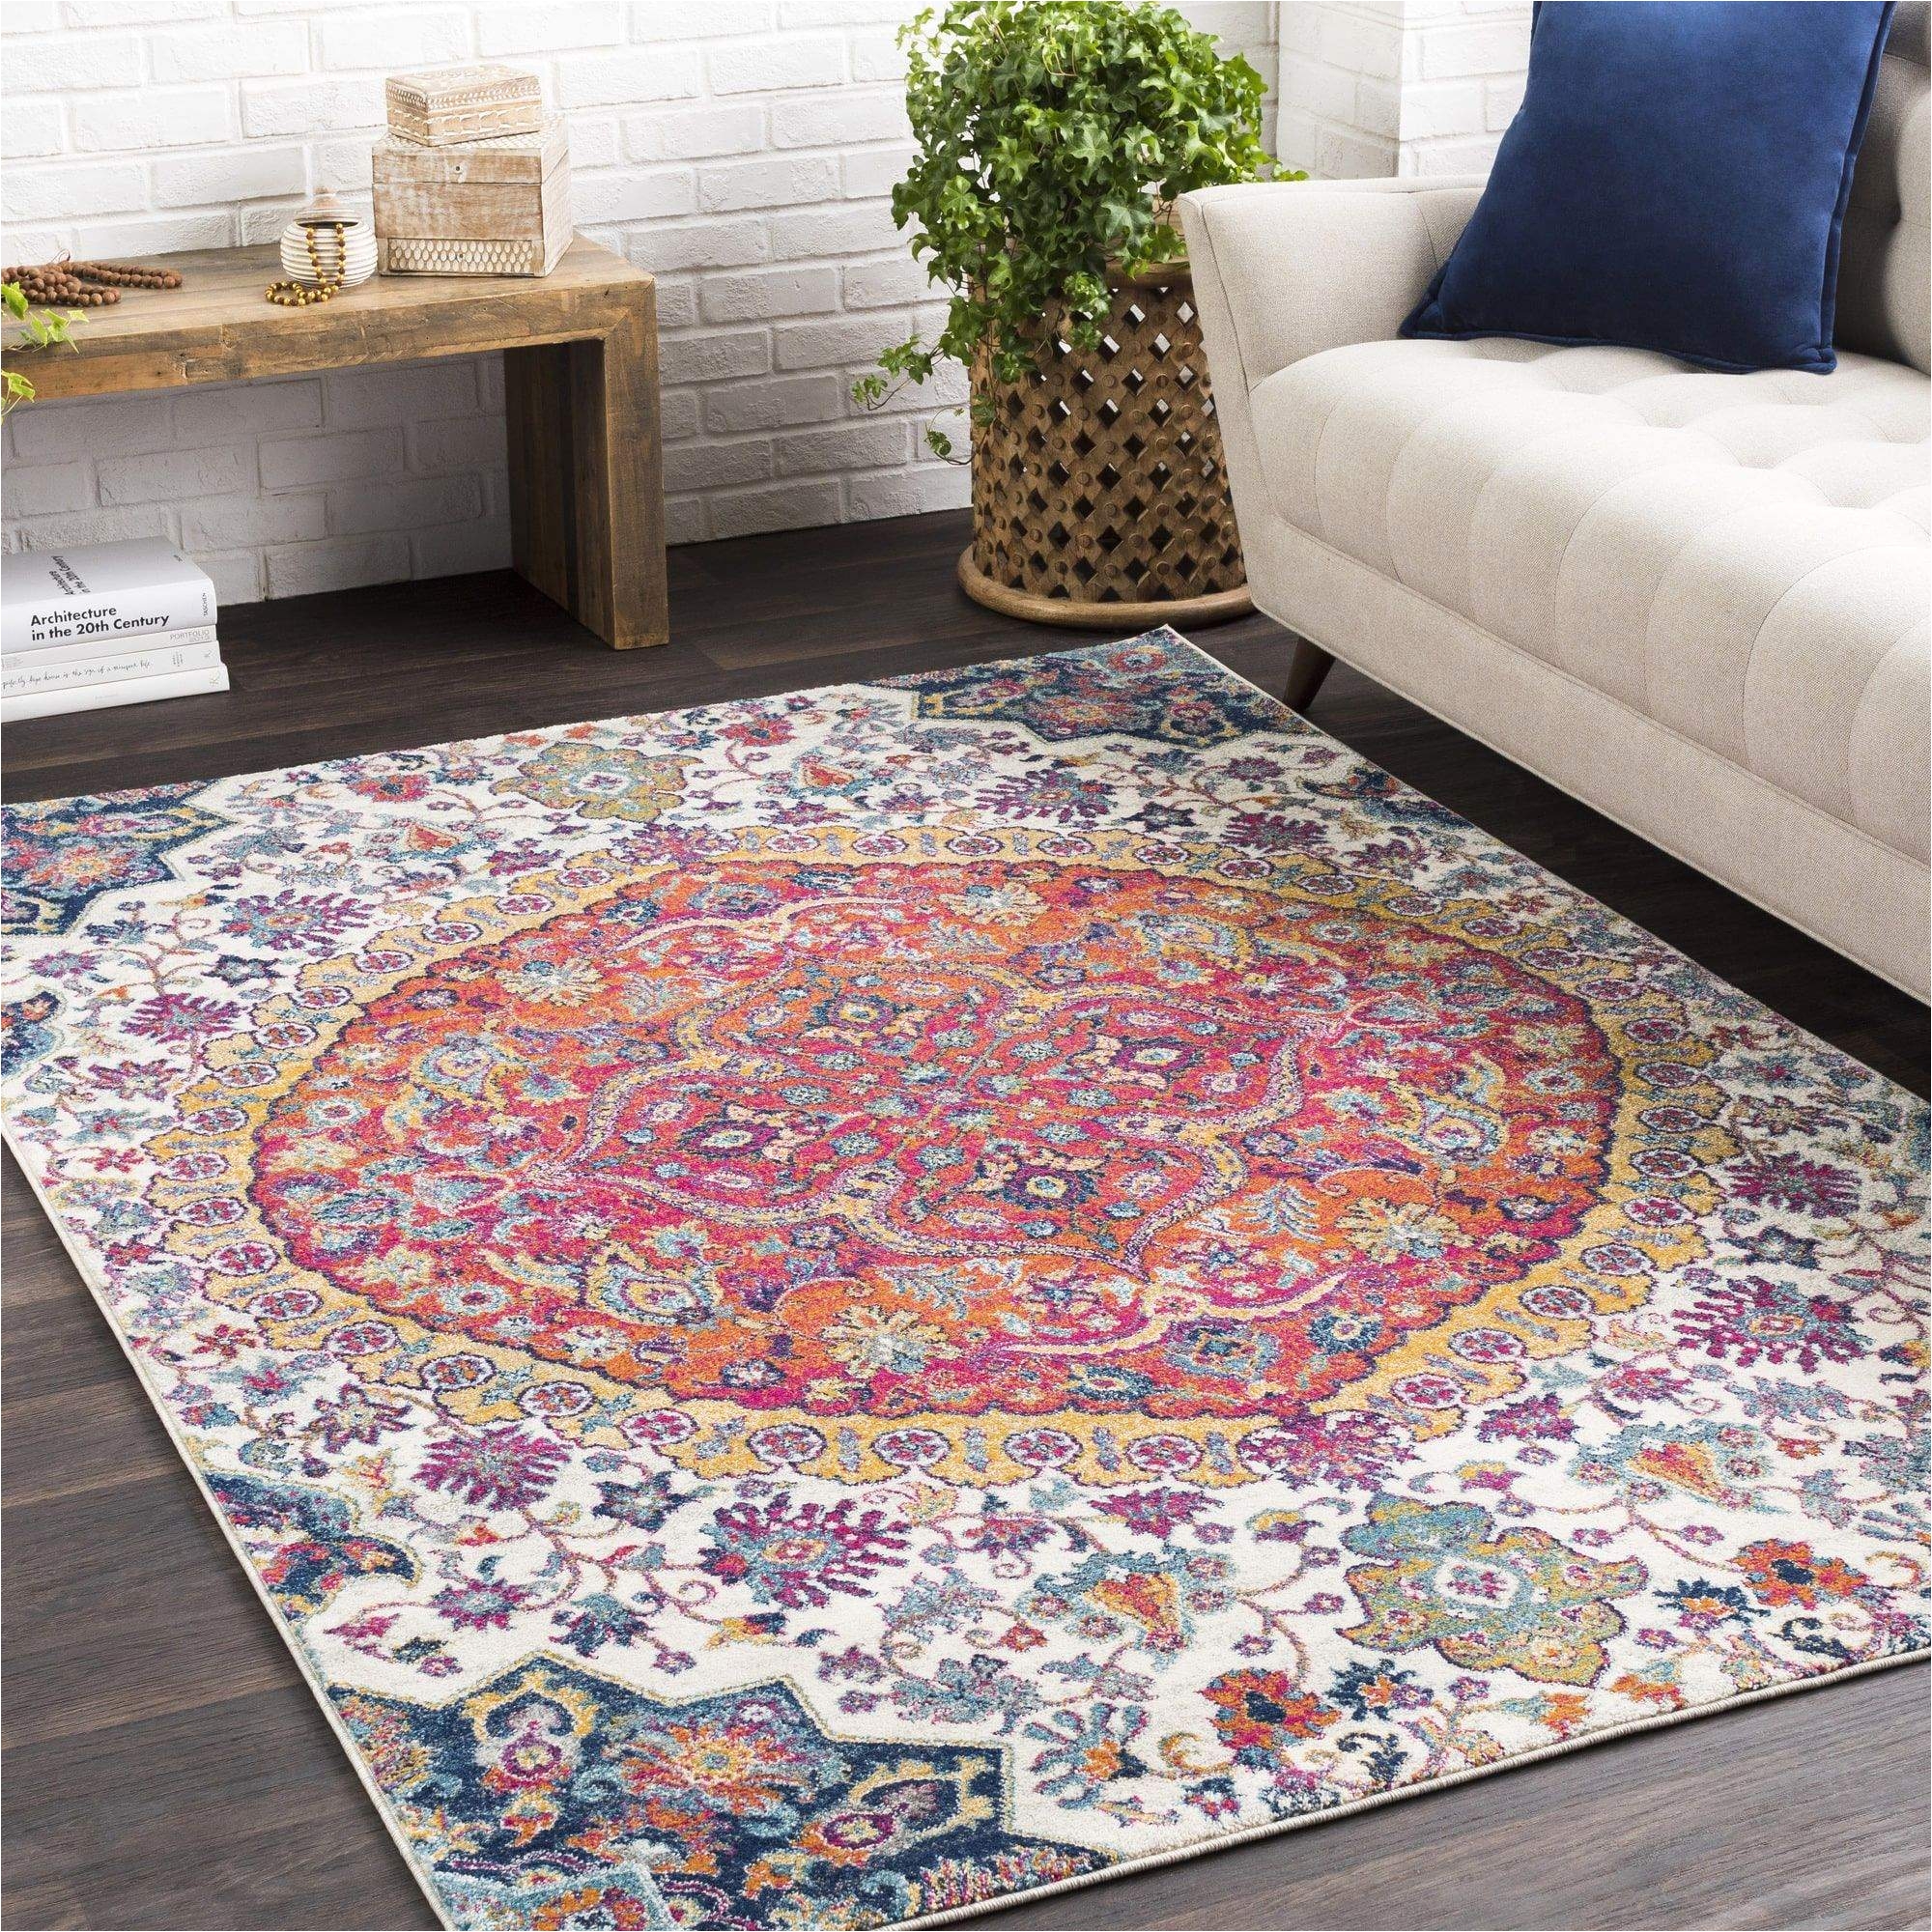 marvel area rug beautiful amelia vintage persian medallion pink ivory multi area rug 2 x 3